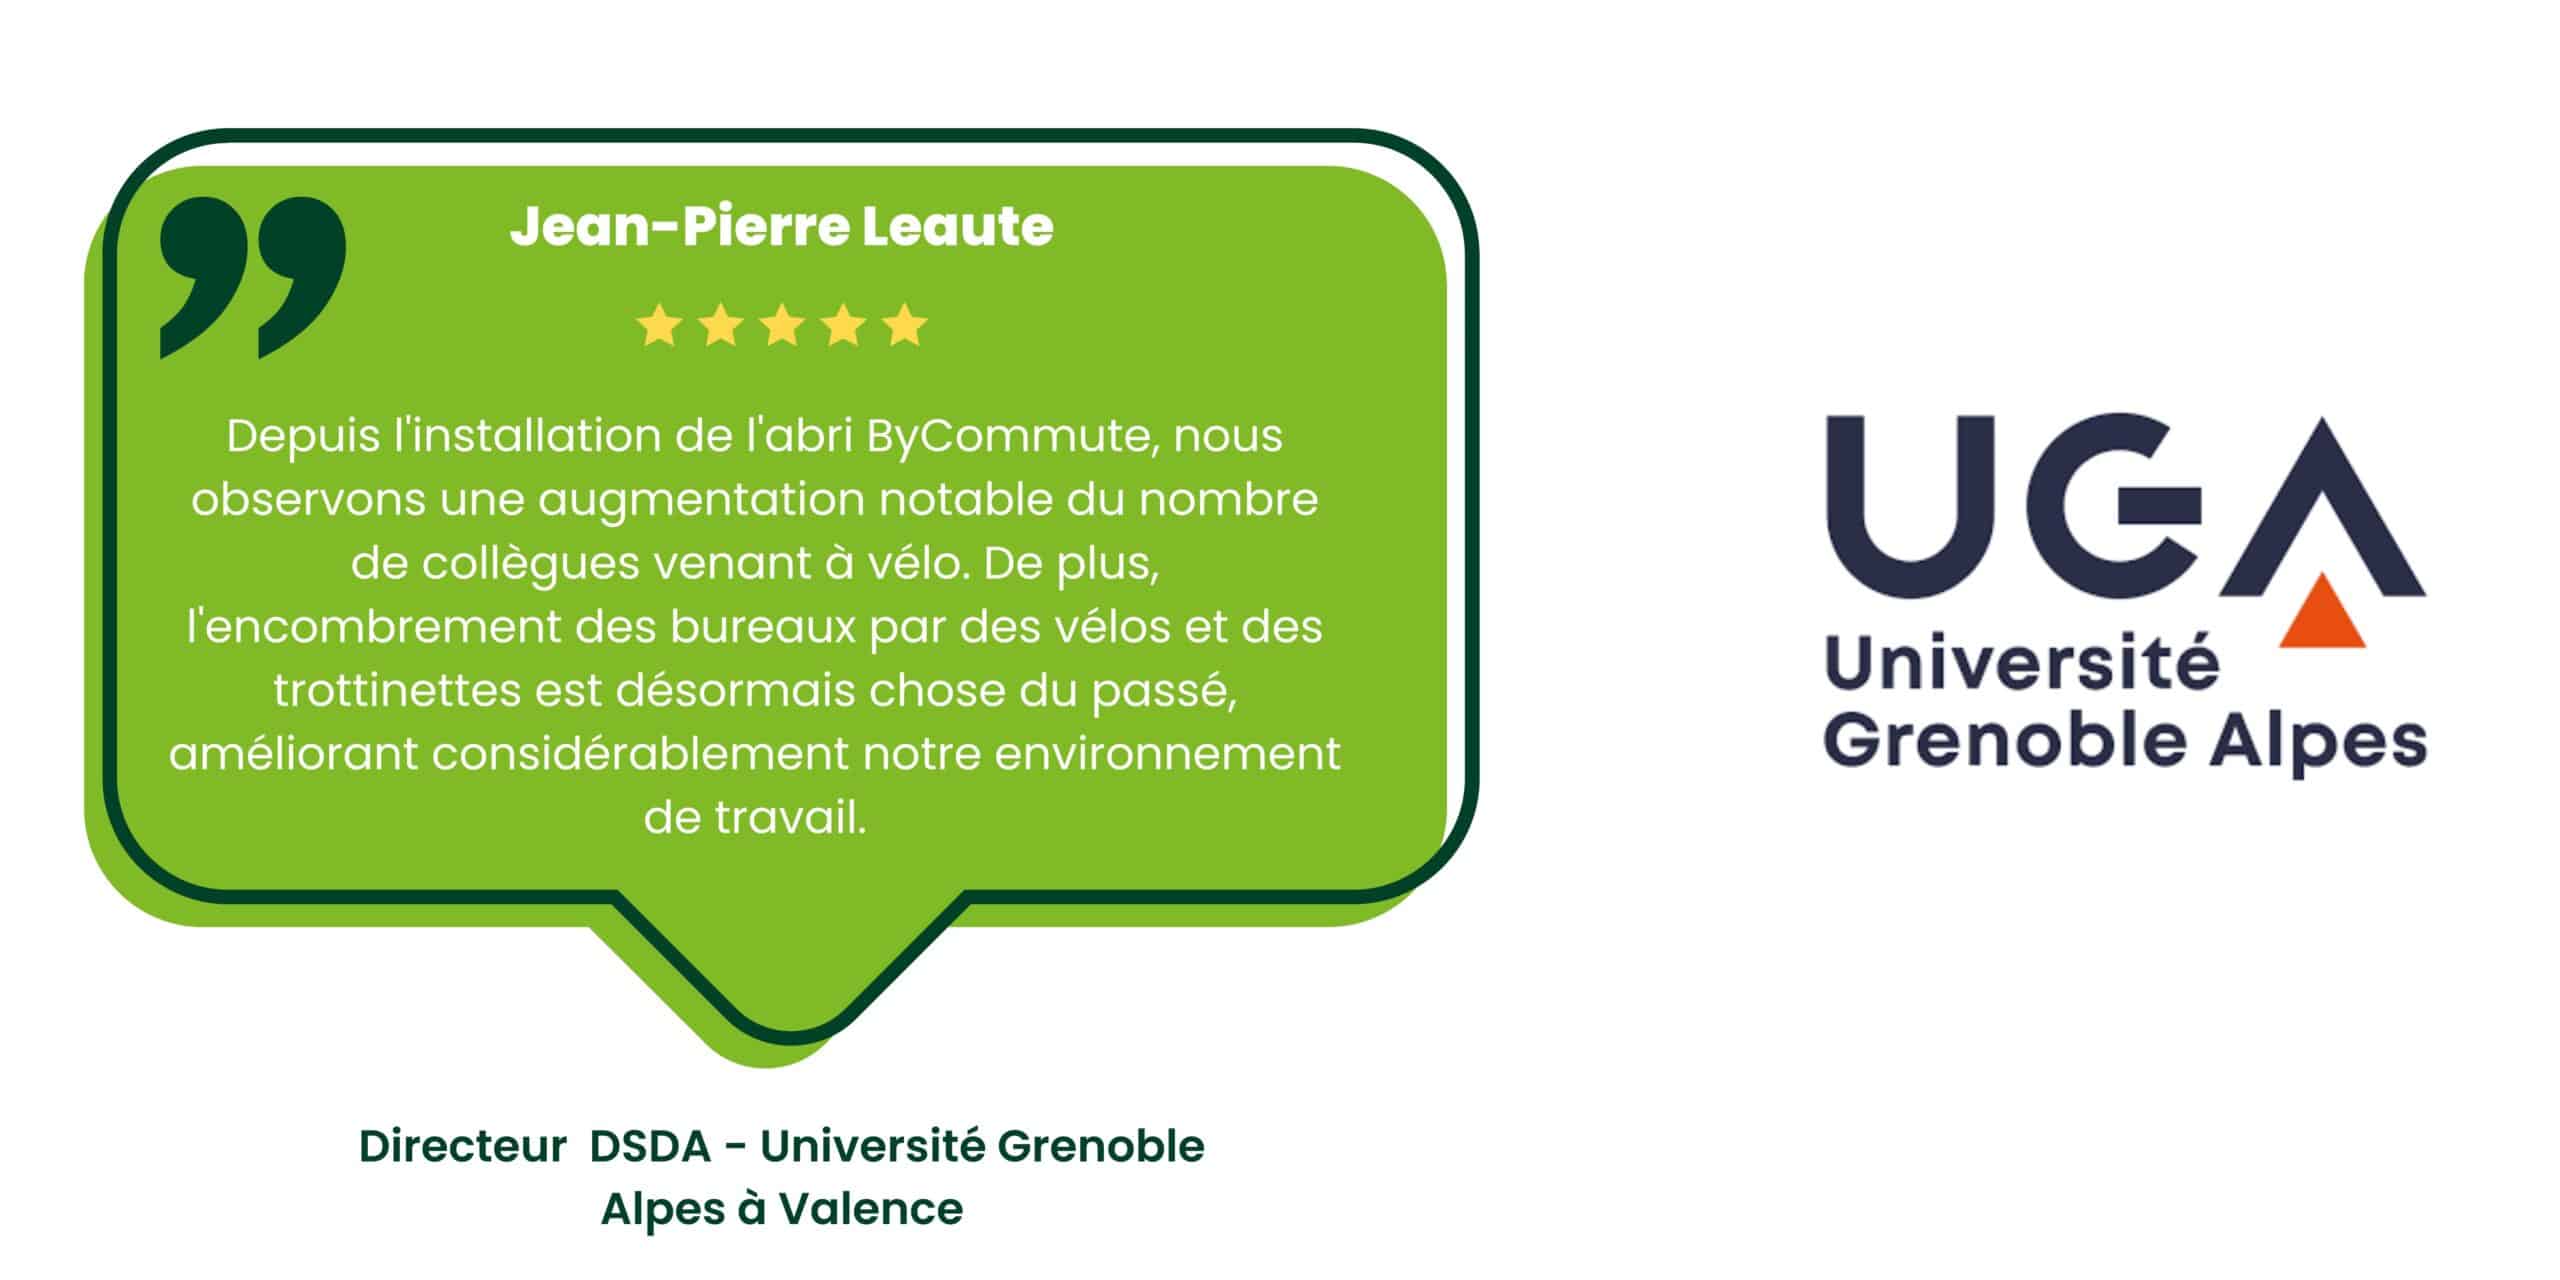 Témoignage client de Jean-Pierre Leaute, Directeur DSDA à l'Université Grenoble Alpes à Valence, sur l'installation de l'abri ByCommute. Il mentionne l'augmentation du nombre de collègues venant à vélo et la réduction de l'encombrement des bureaux par des vélos et des trottinettes, améliorant l'environnement de travail.